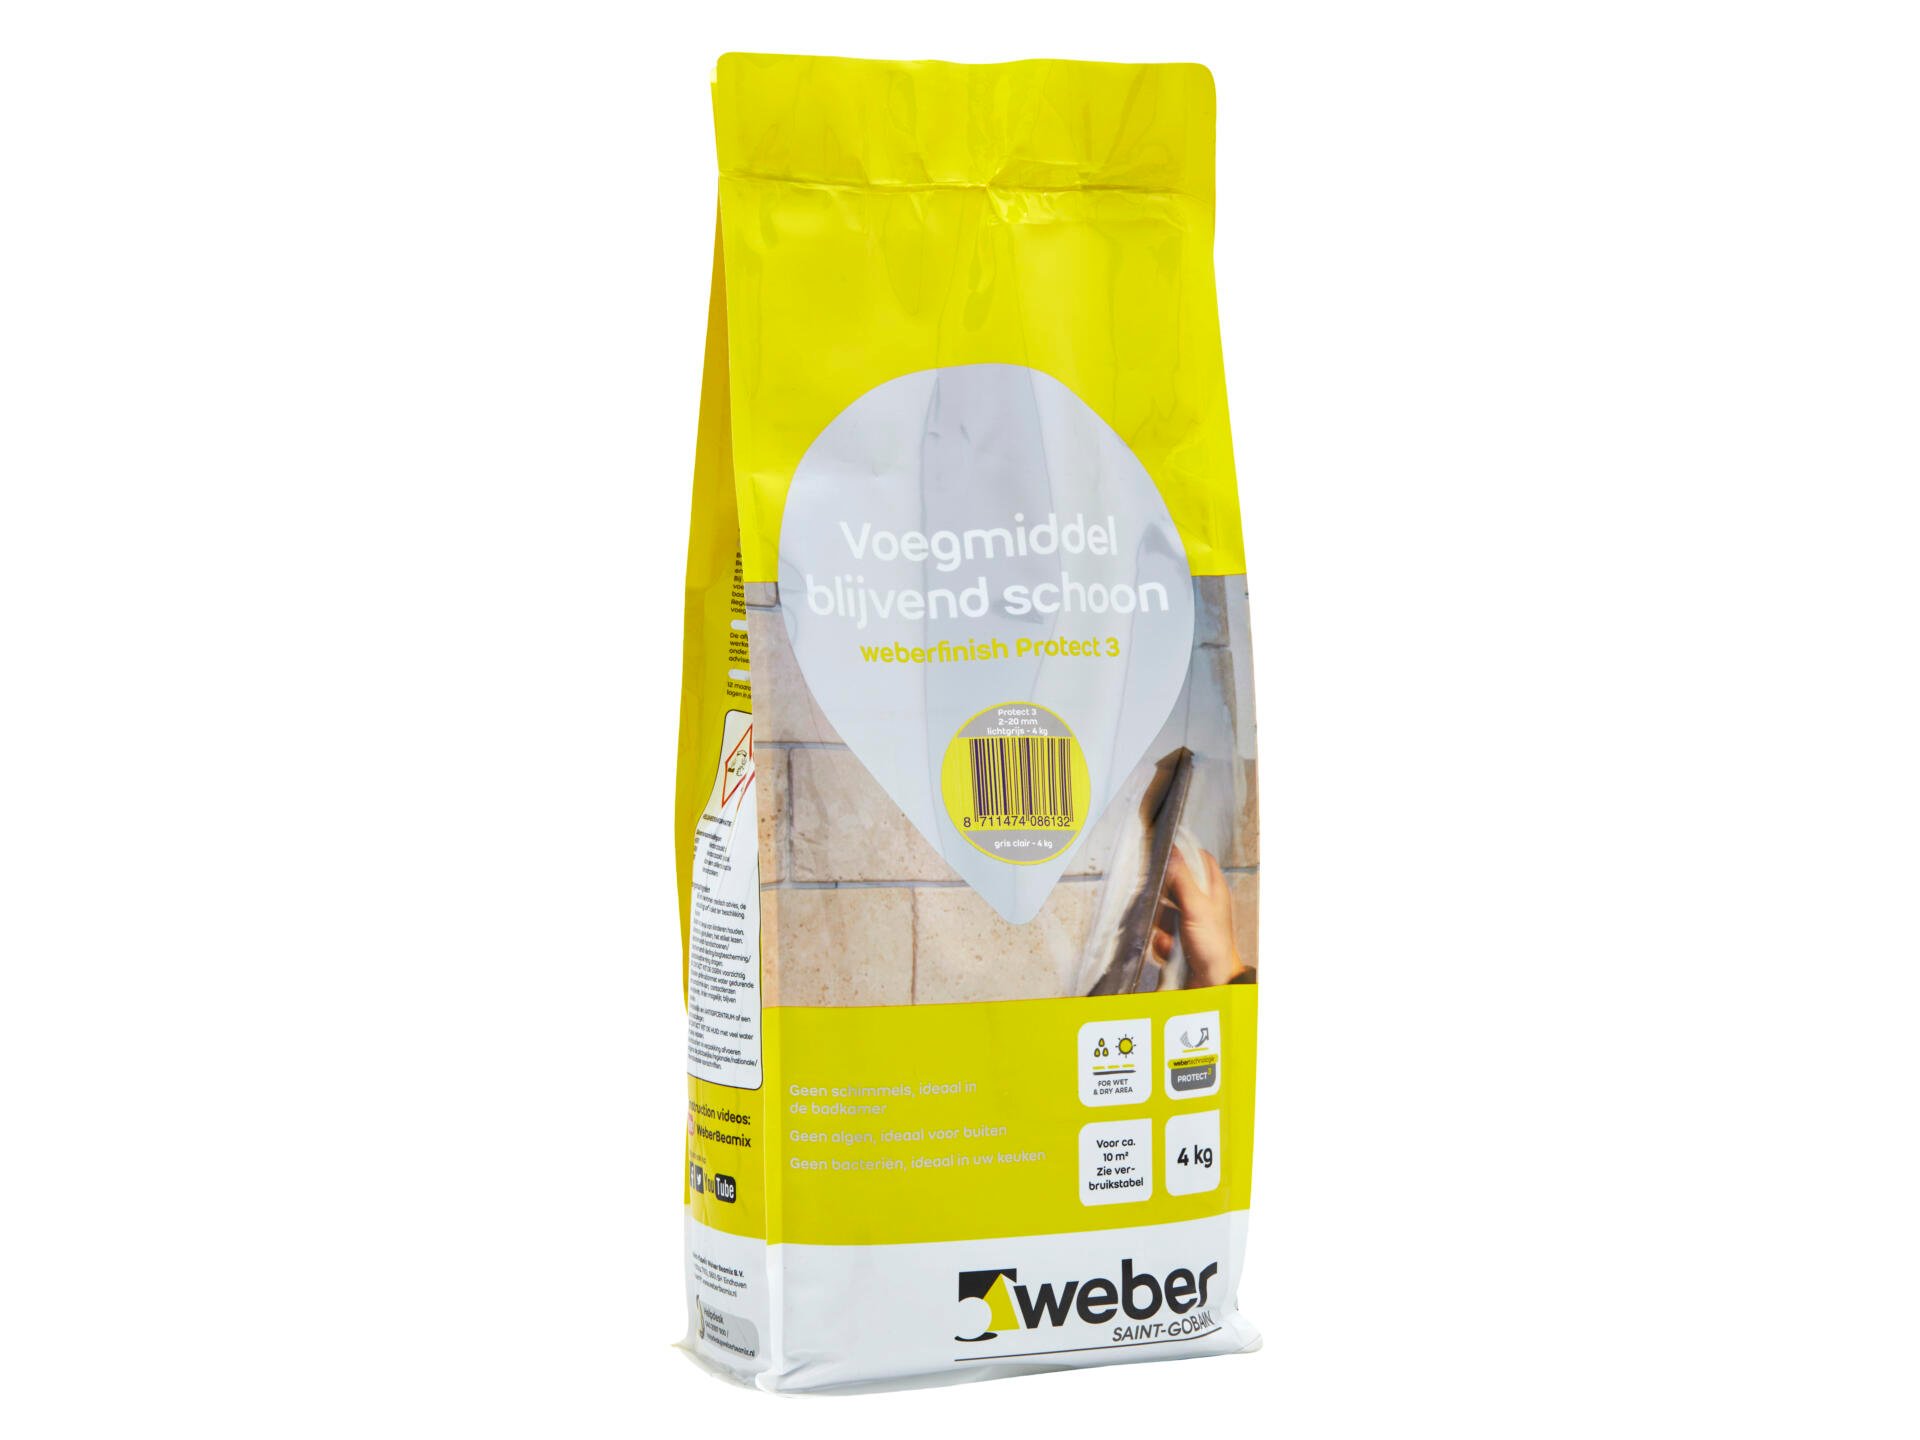 Weber Beamix Finish Protect 3 voegmiddel waterdicht & blijvend schoon 4kg antraciet